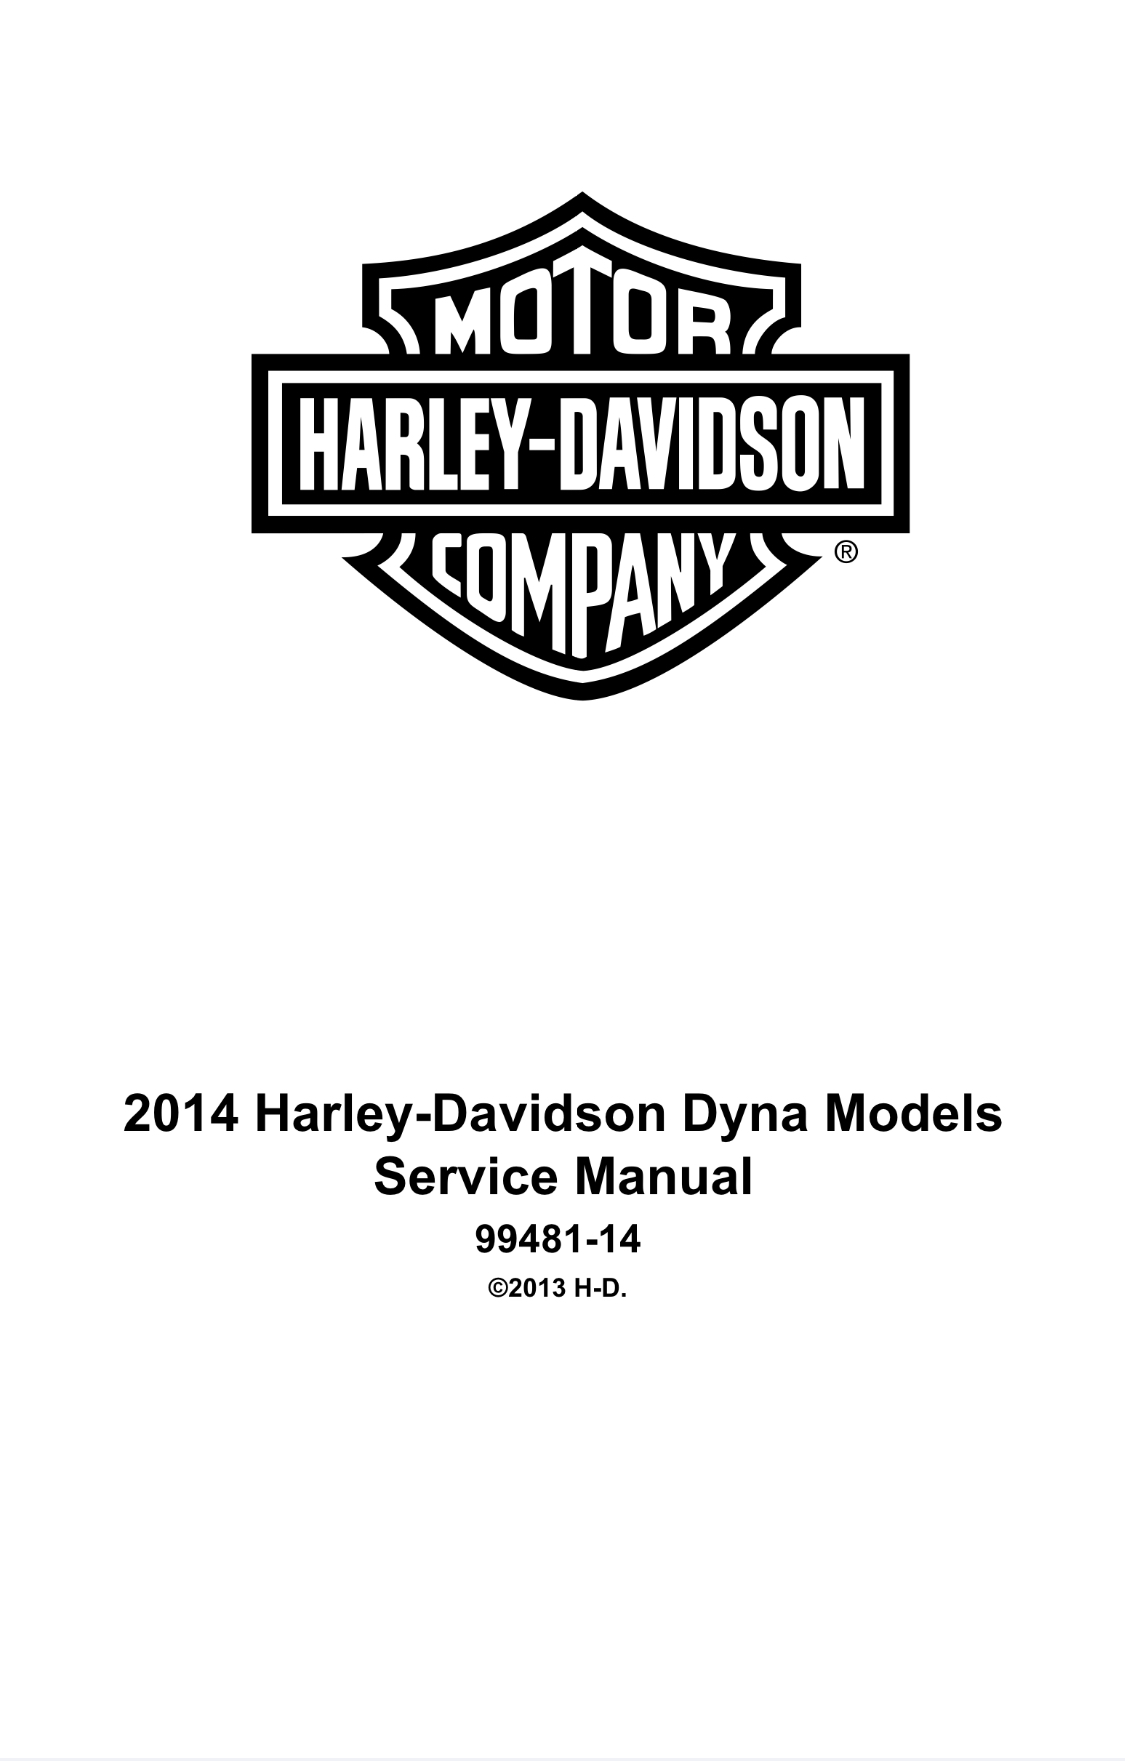 2014哈雷 Dyna 戴纳车型服务和电气诊断手册